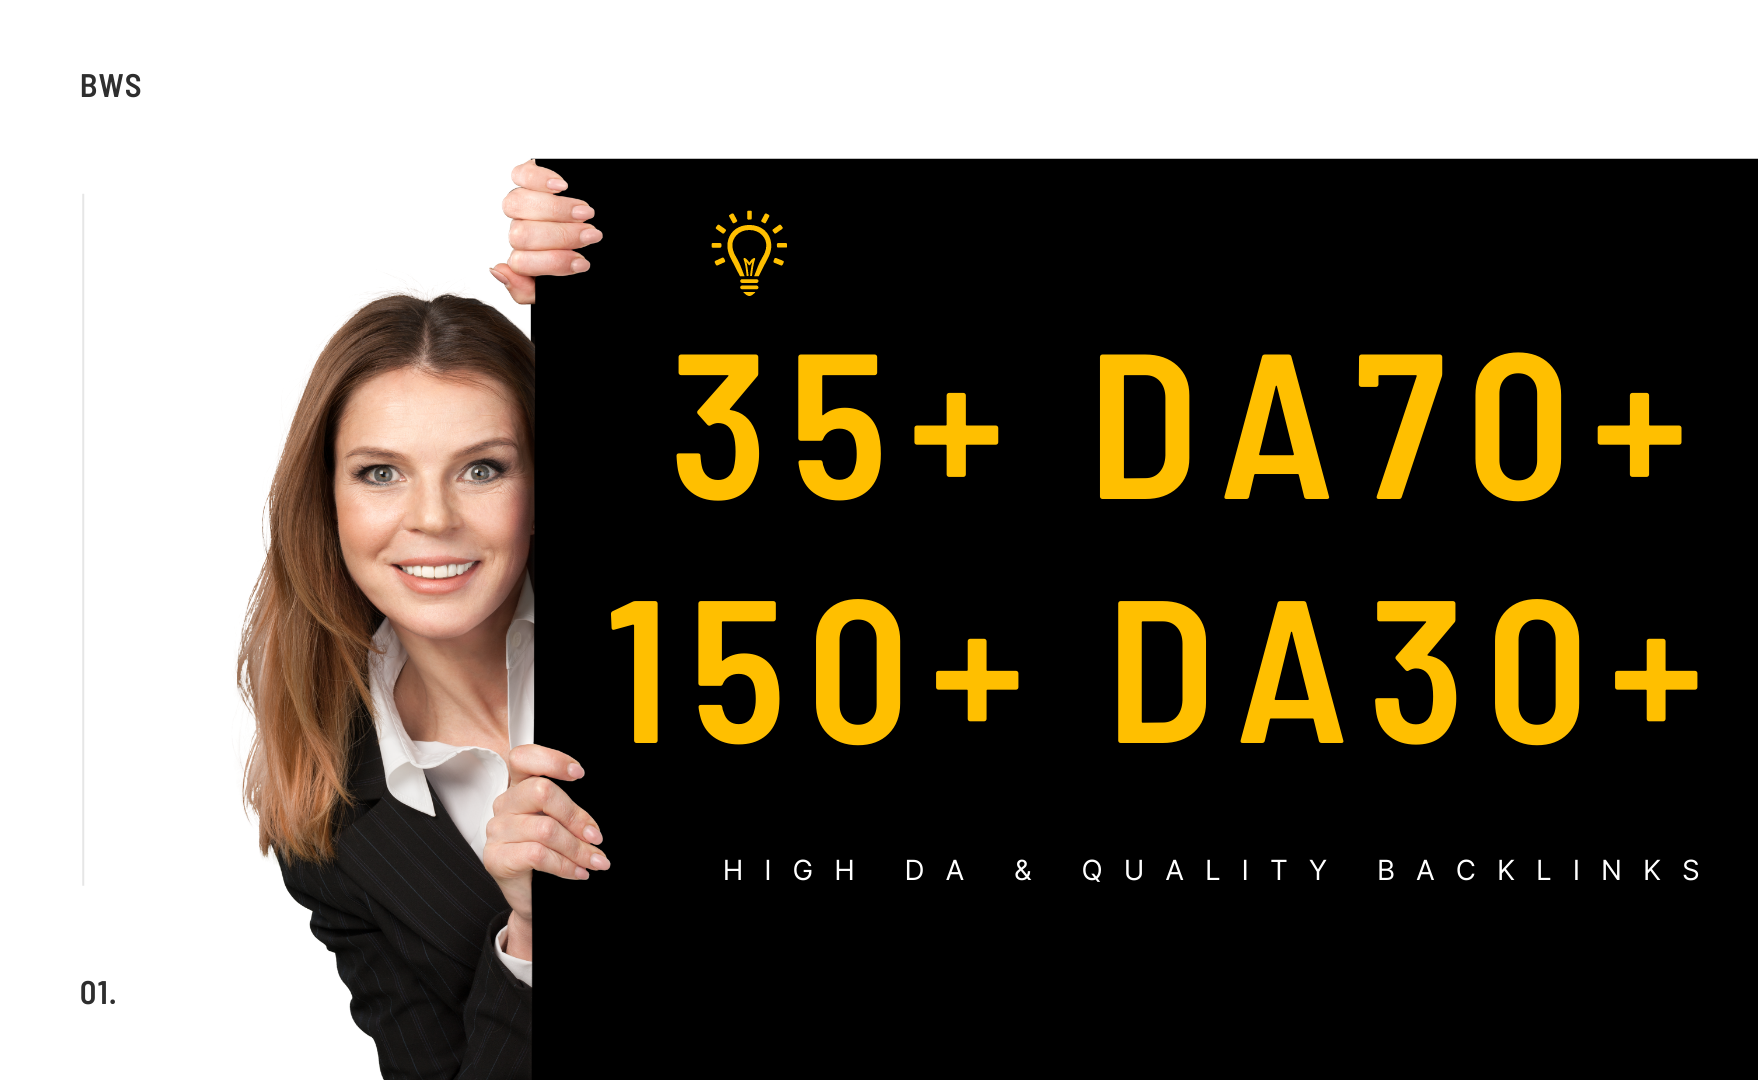 Get 35 DA70+ & 150+ DA30+ High Quality Web 2 Backlinks